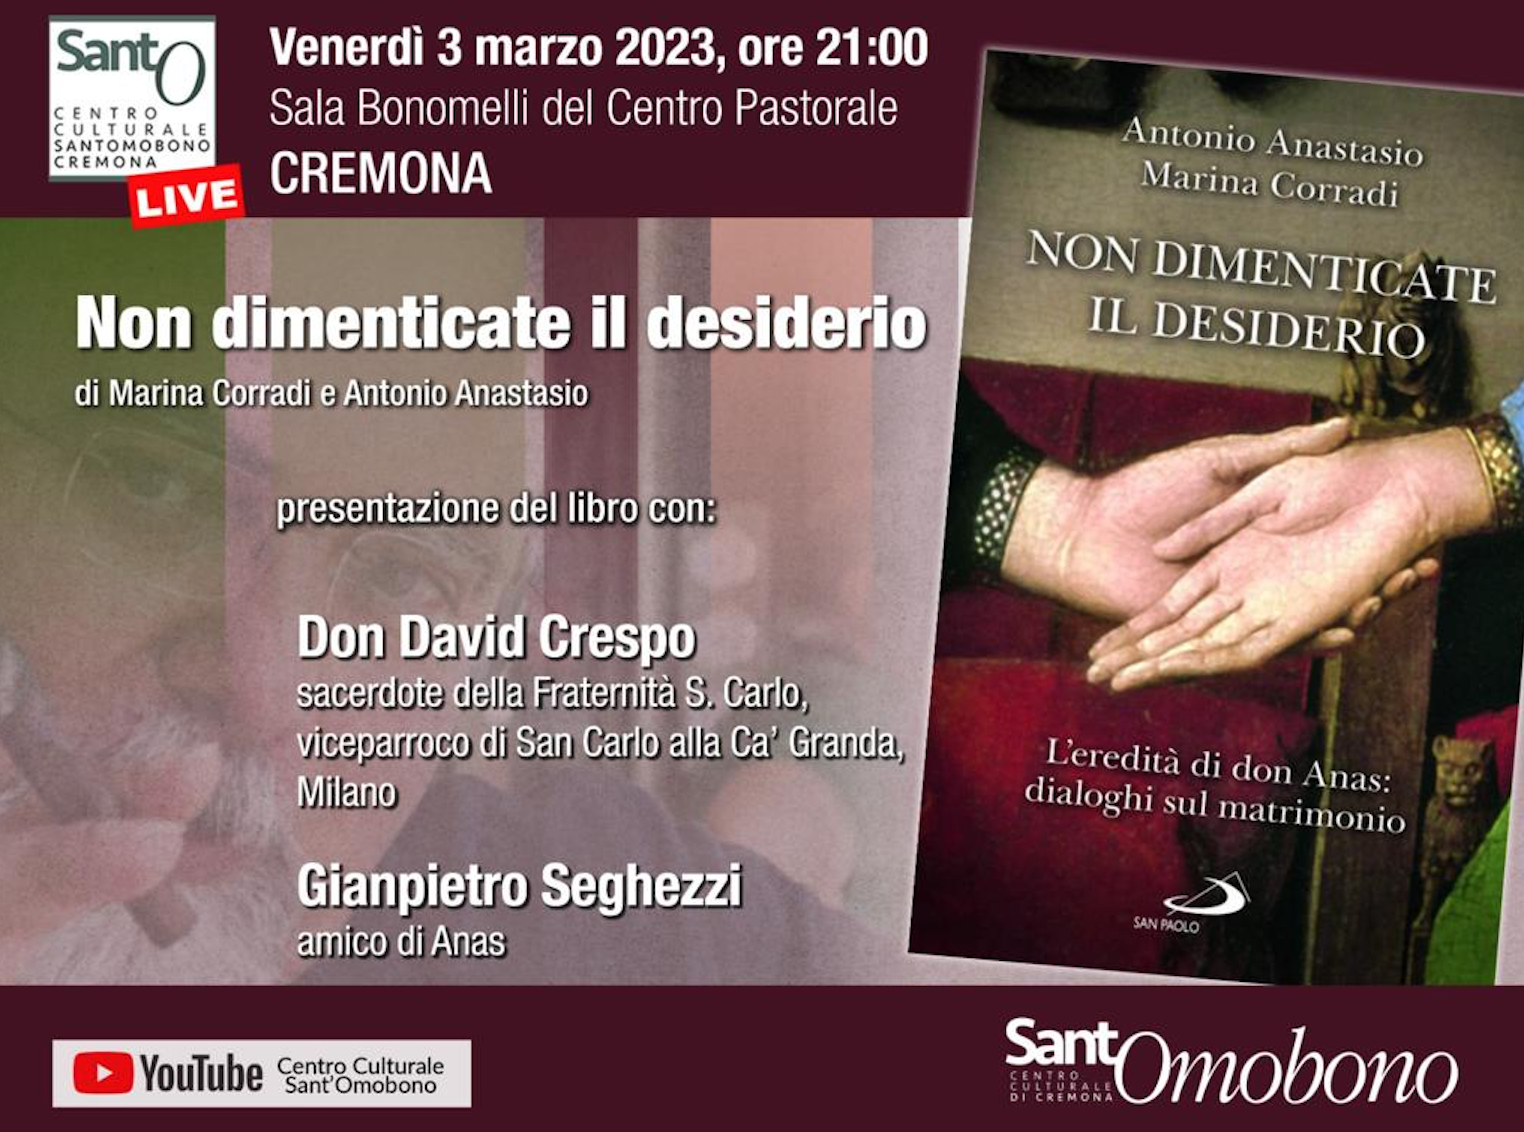 Featured image for “Cremona: Non dimenticate il desiderio”